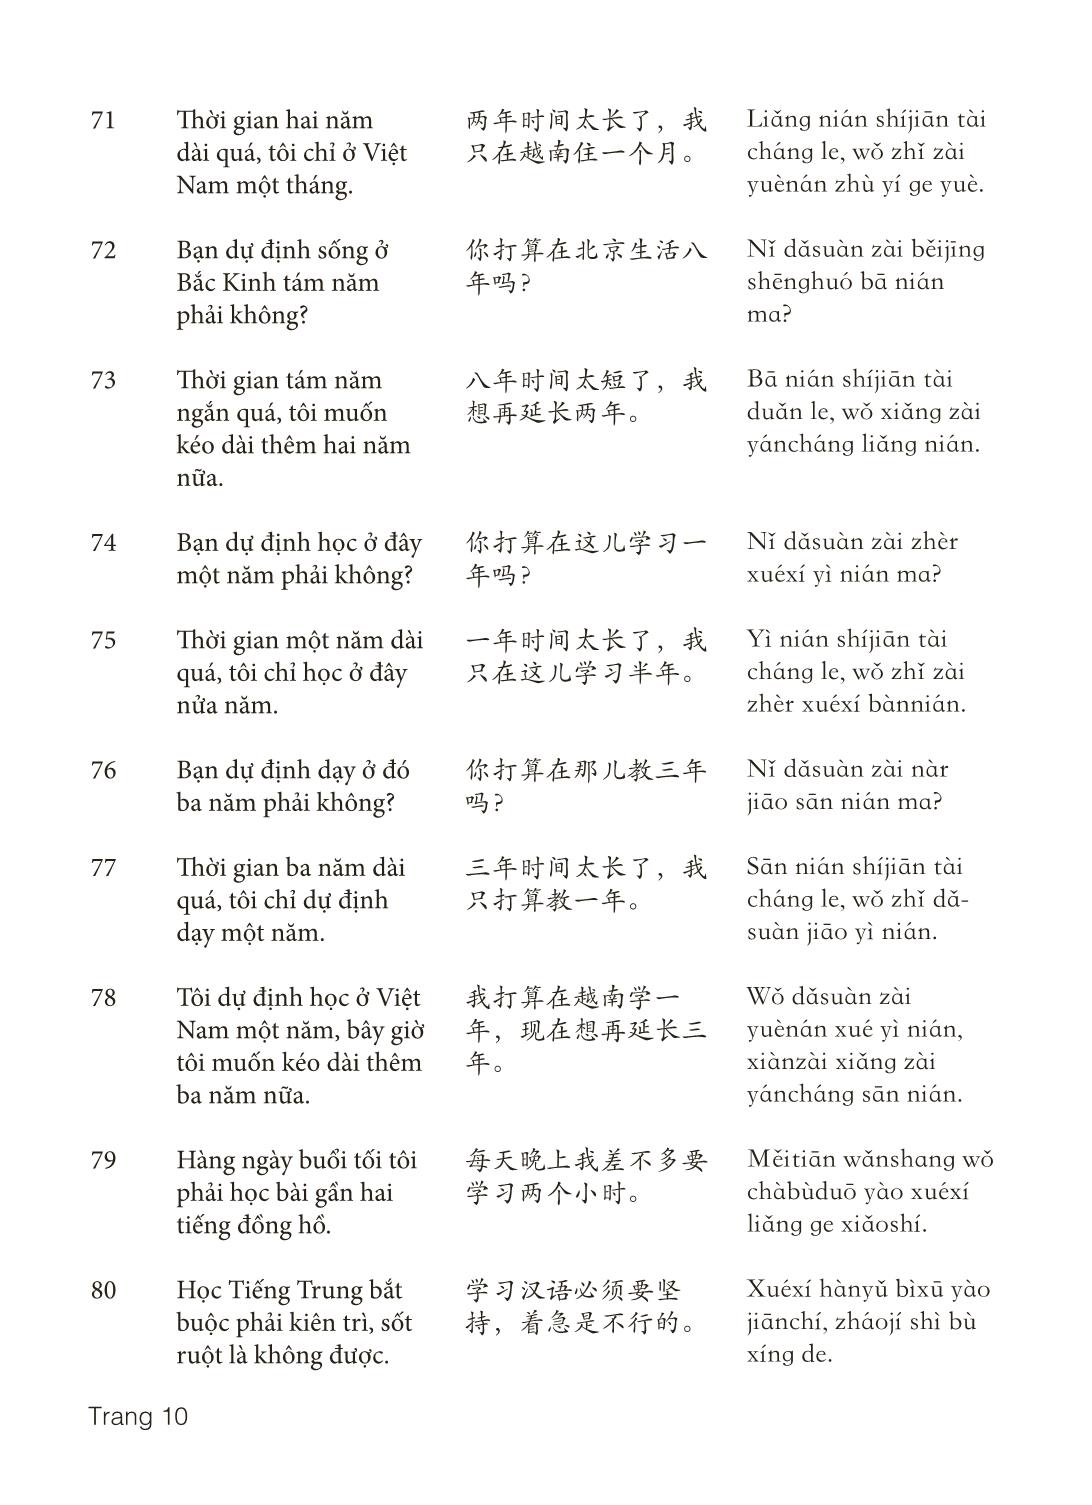 3000 Câu đàm thoại tiếng Hoa - Phần 13 trang 10